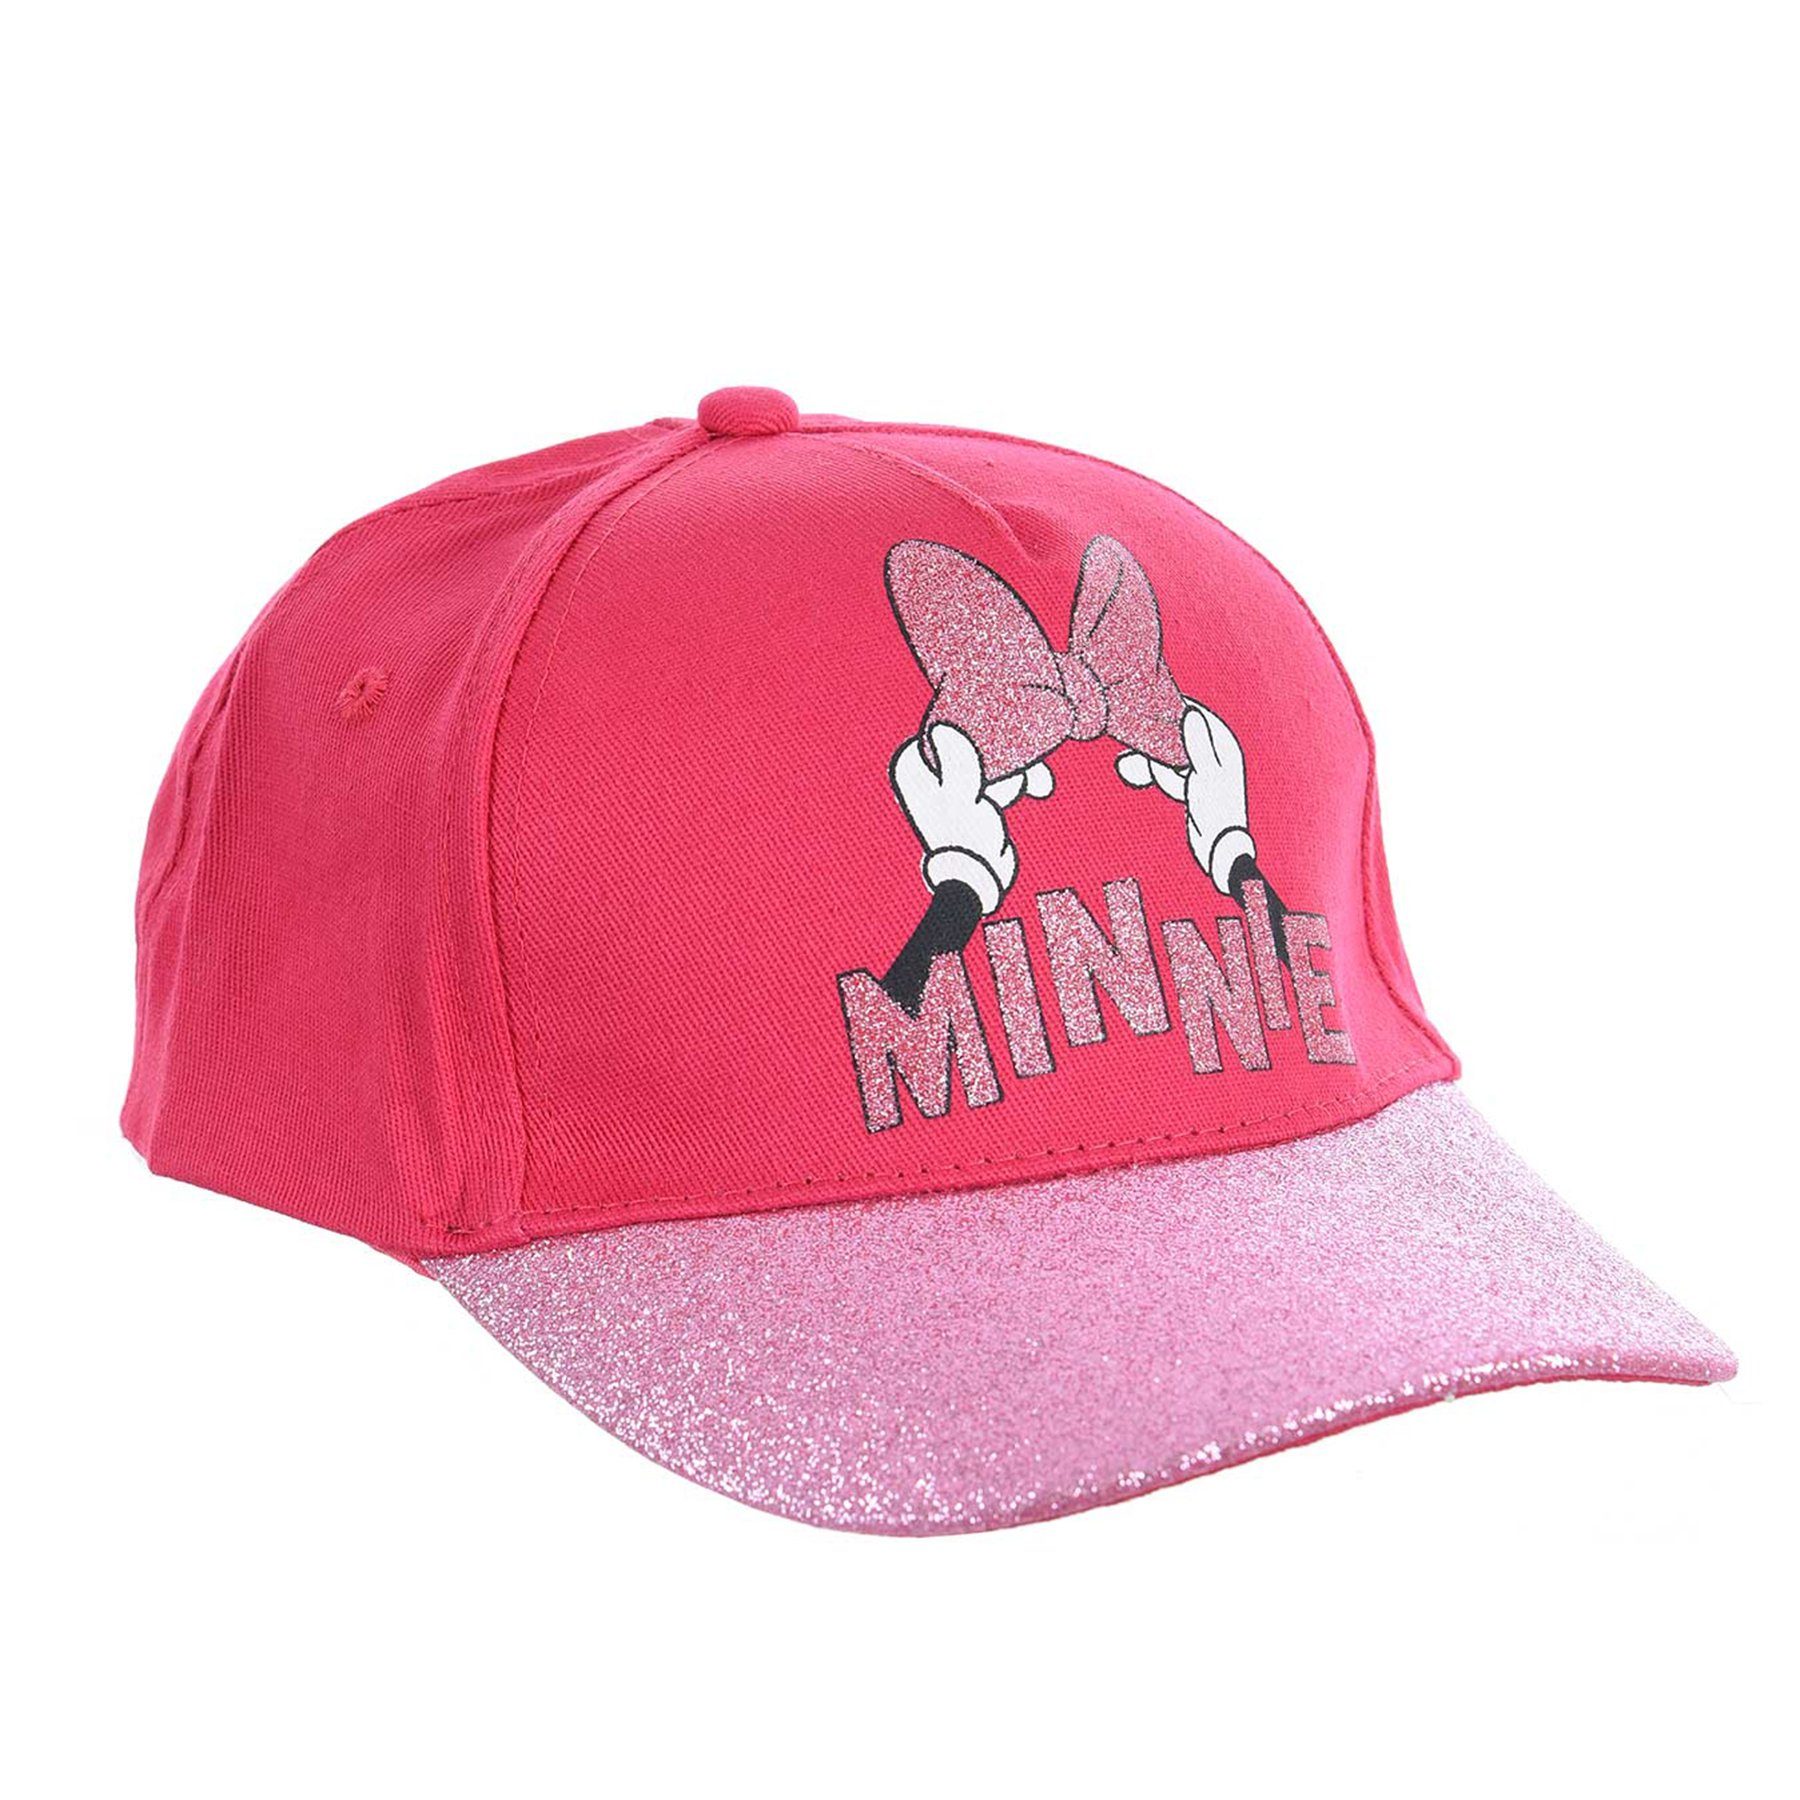 Disney Minnie Baseball Pink Cap Kappe Mütze Mouse